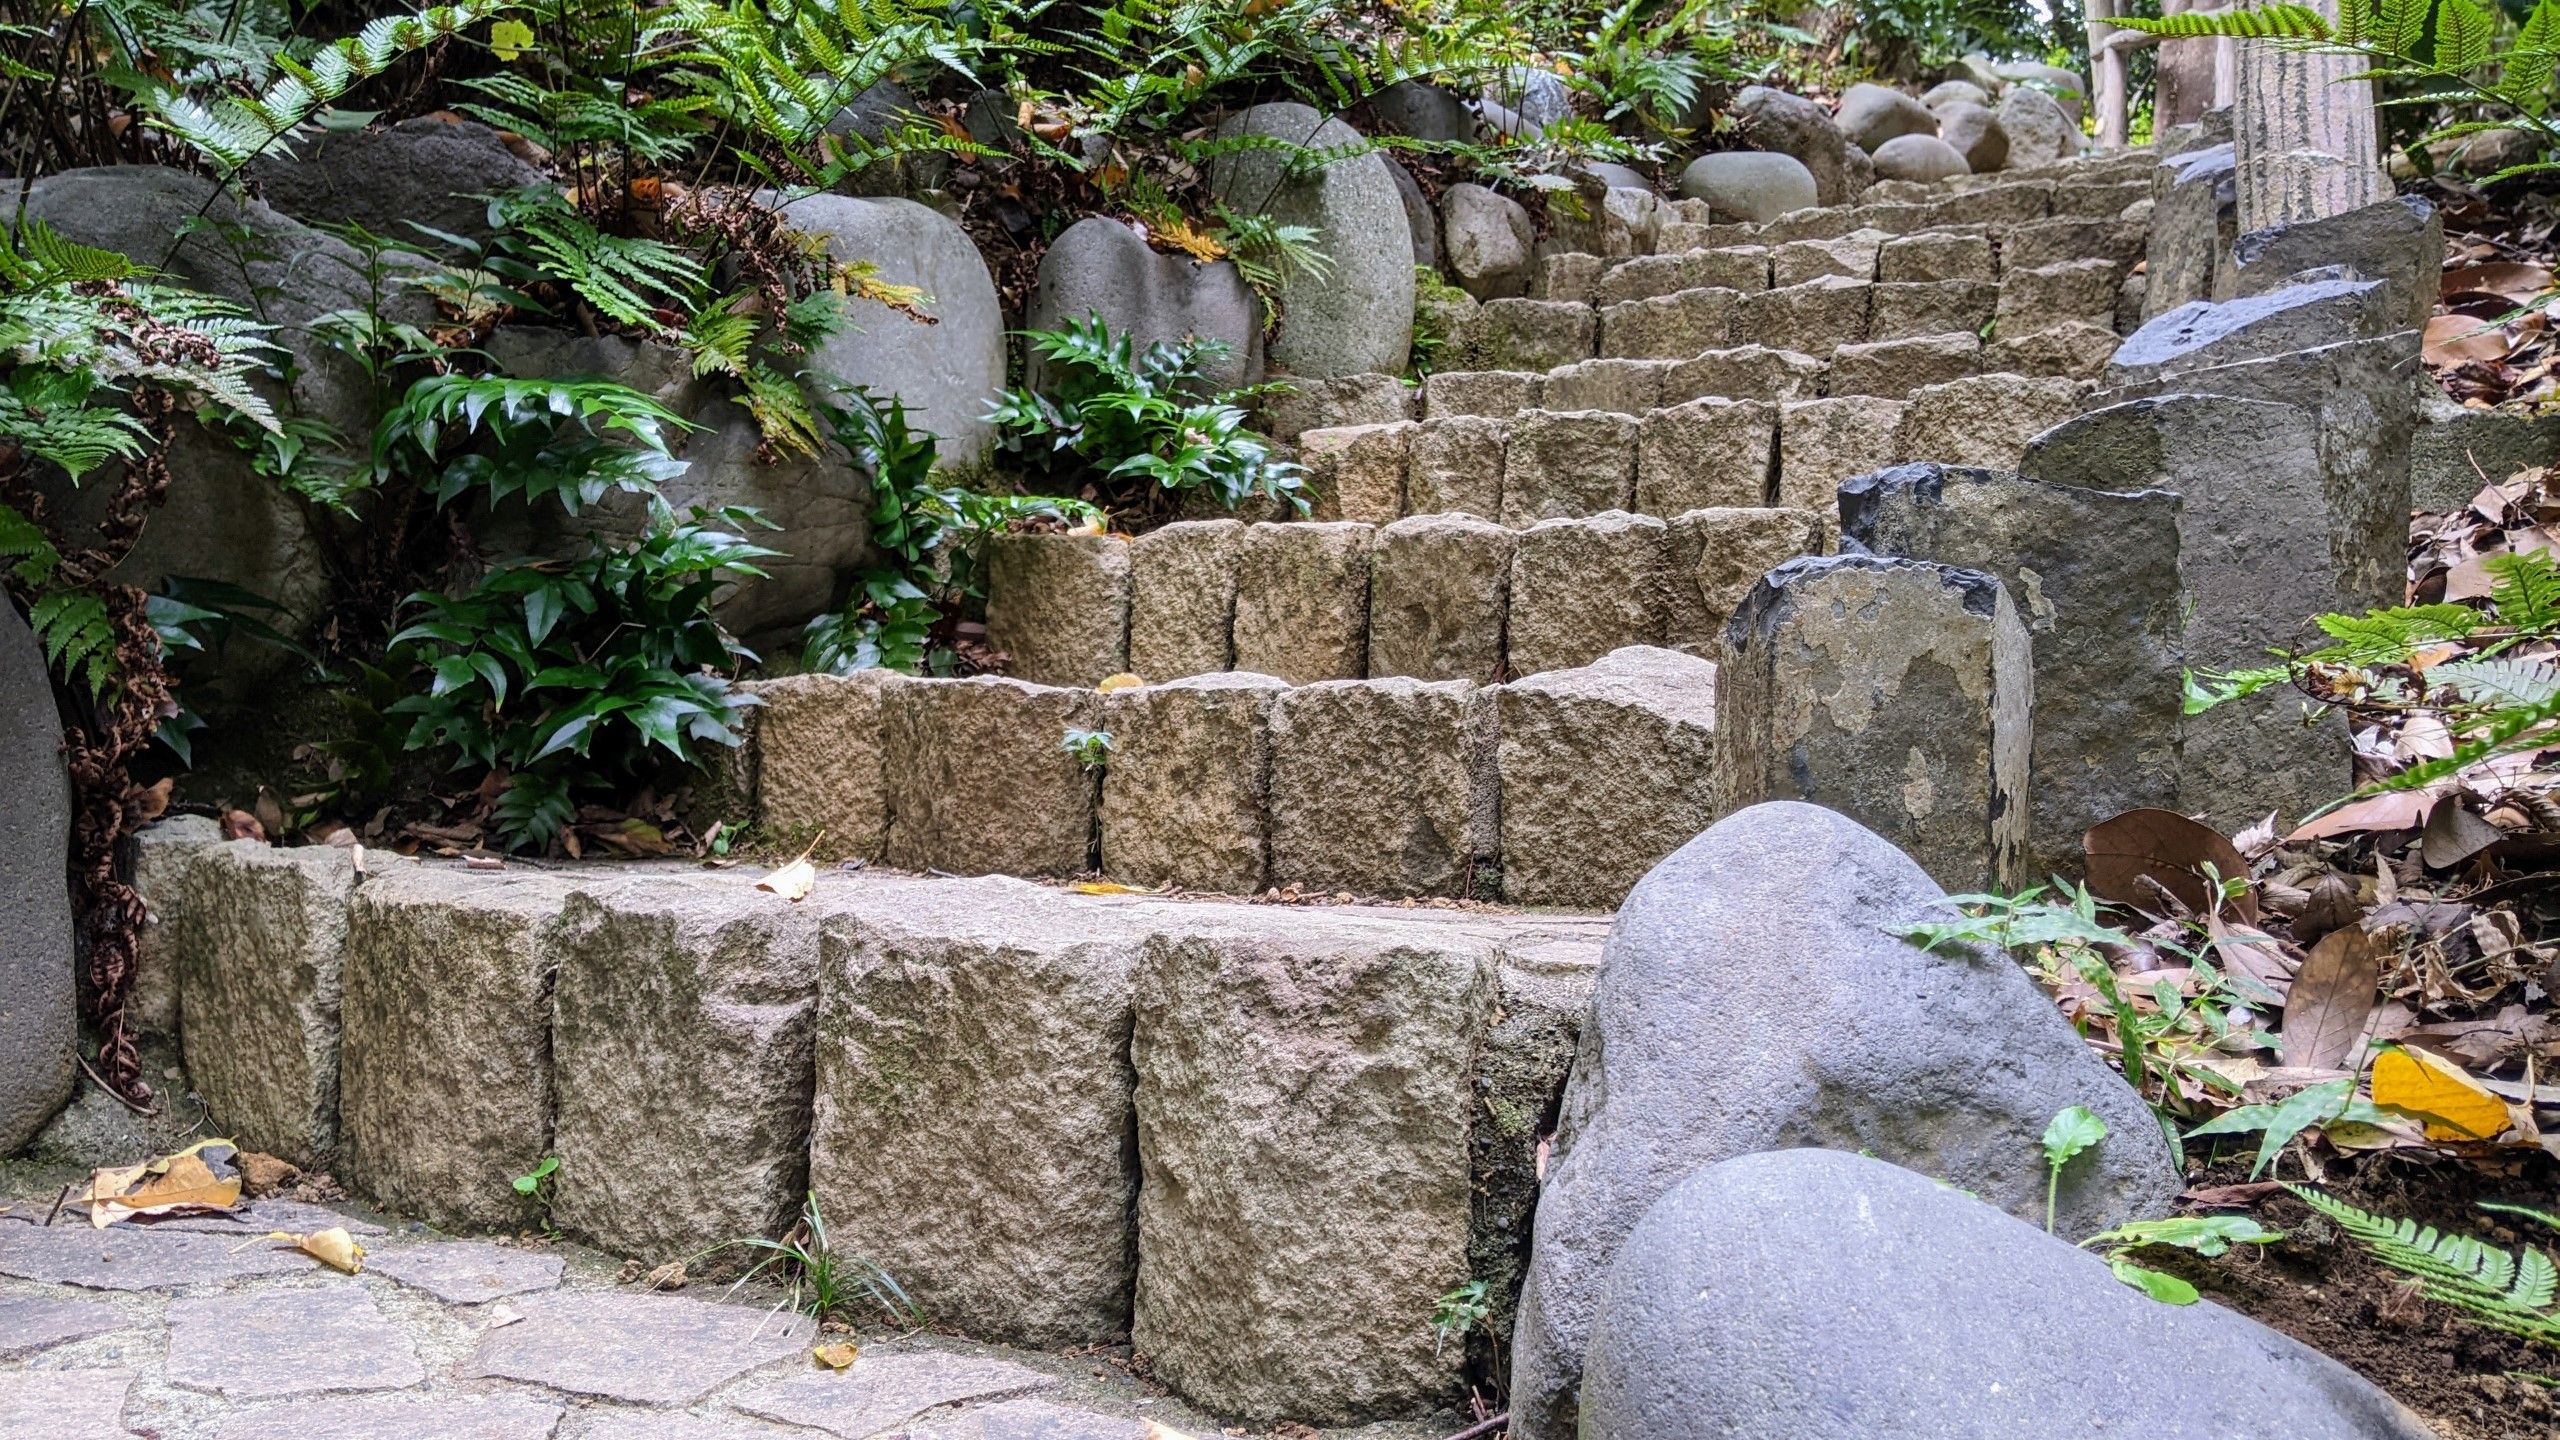 丹念に石をくみ上げて作られた階段で庭園の丘を登っていく